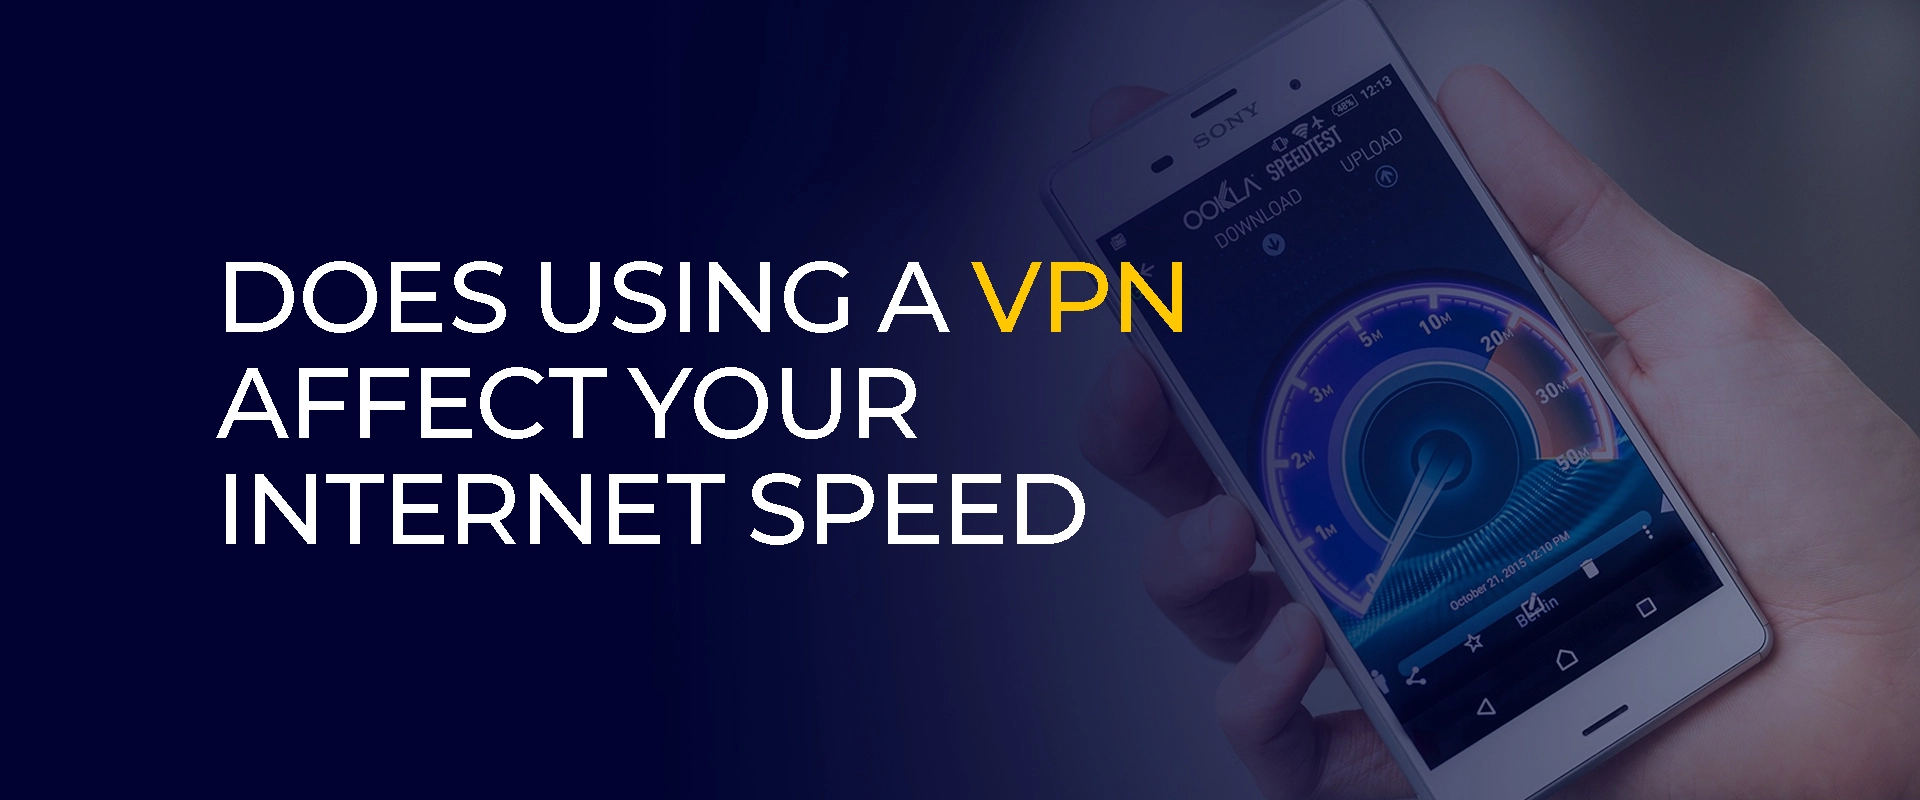 آیا استفاده از VPN بر سرعت اینترنت شما تأثیر می گذارد؟